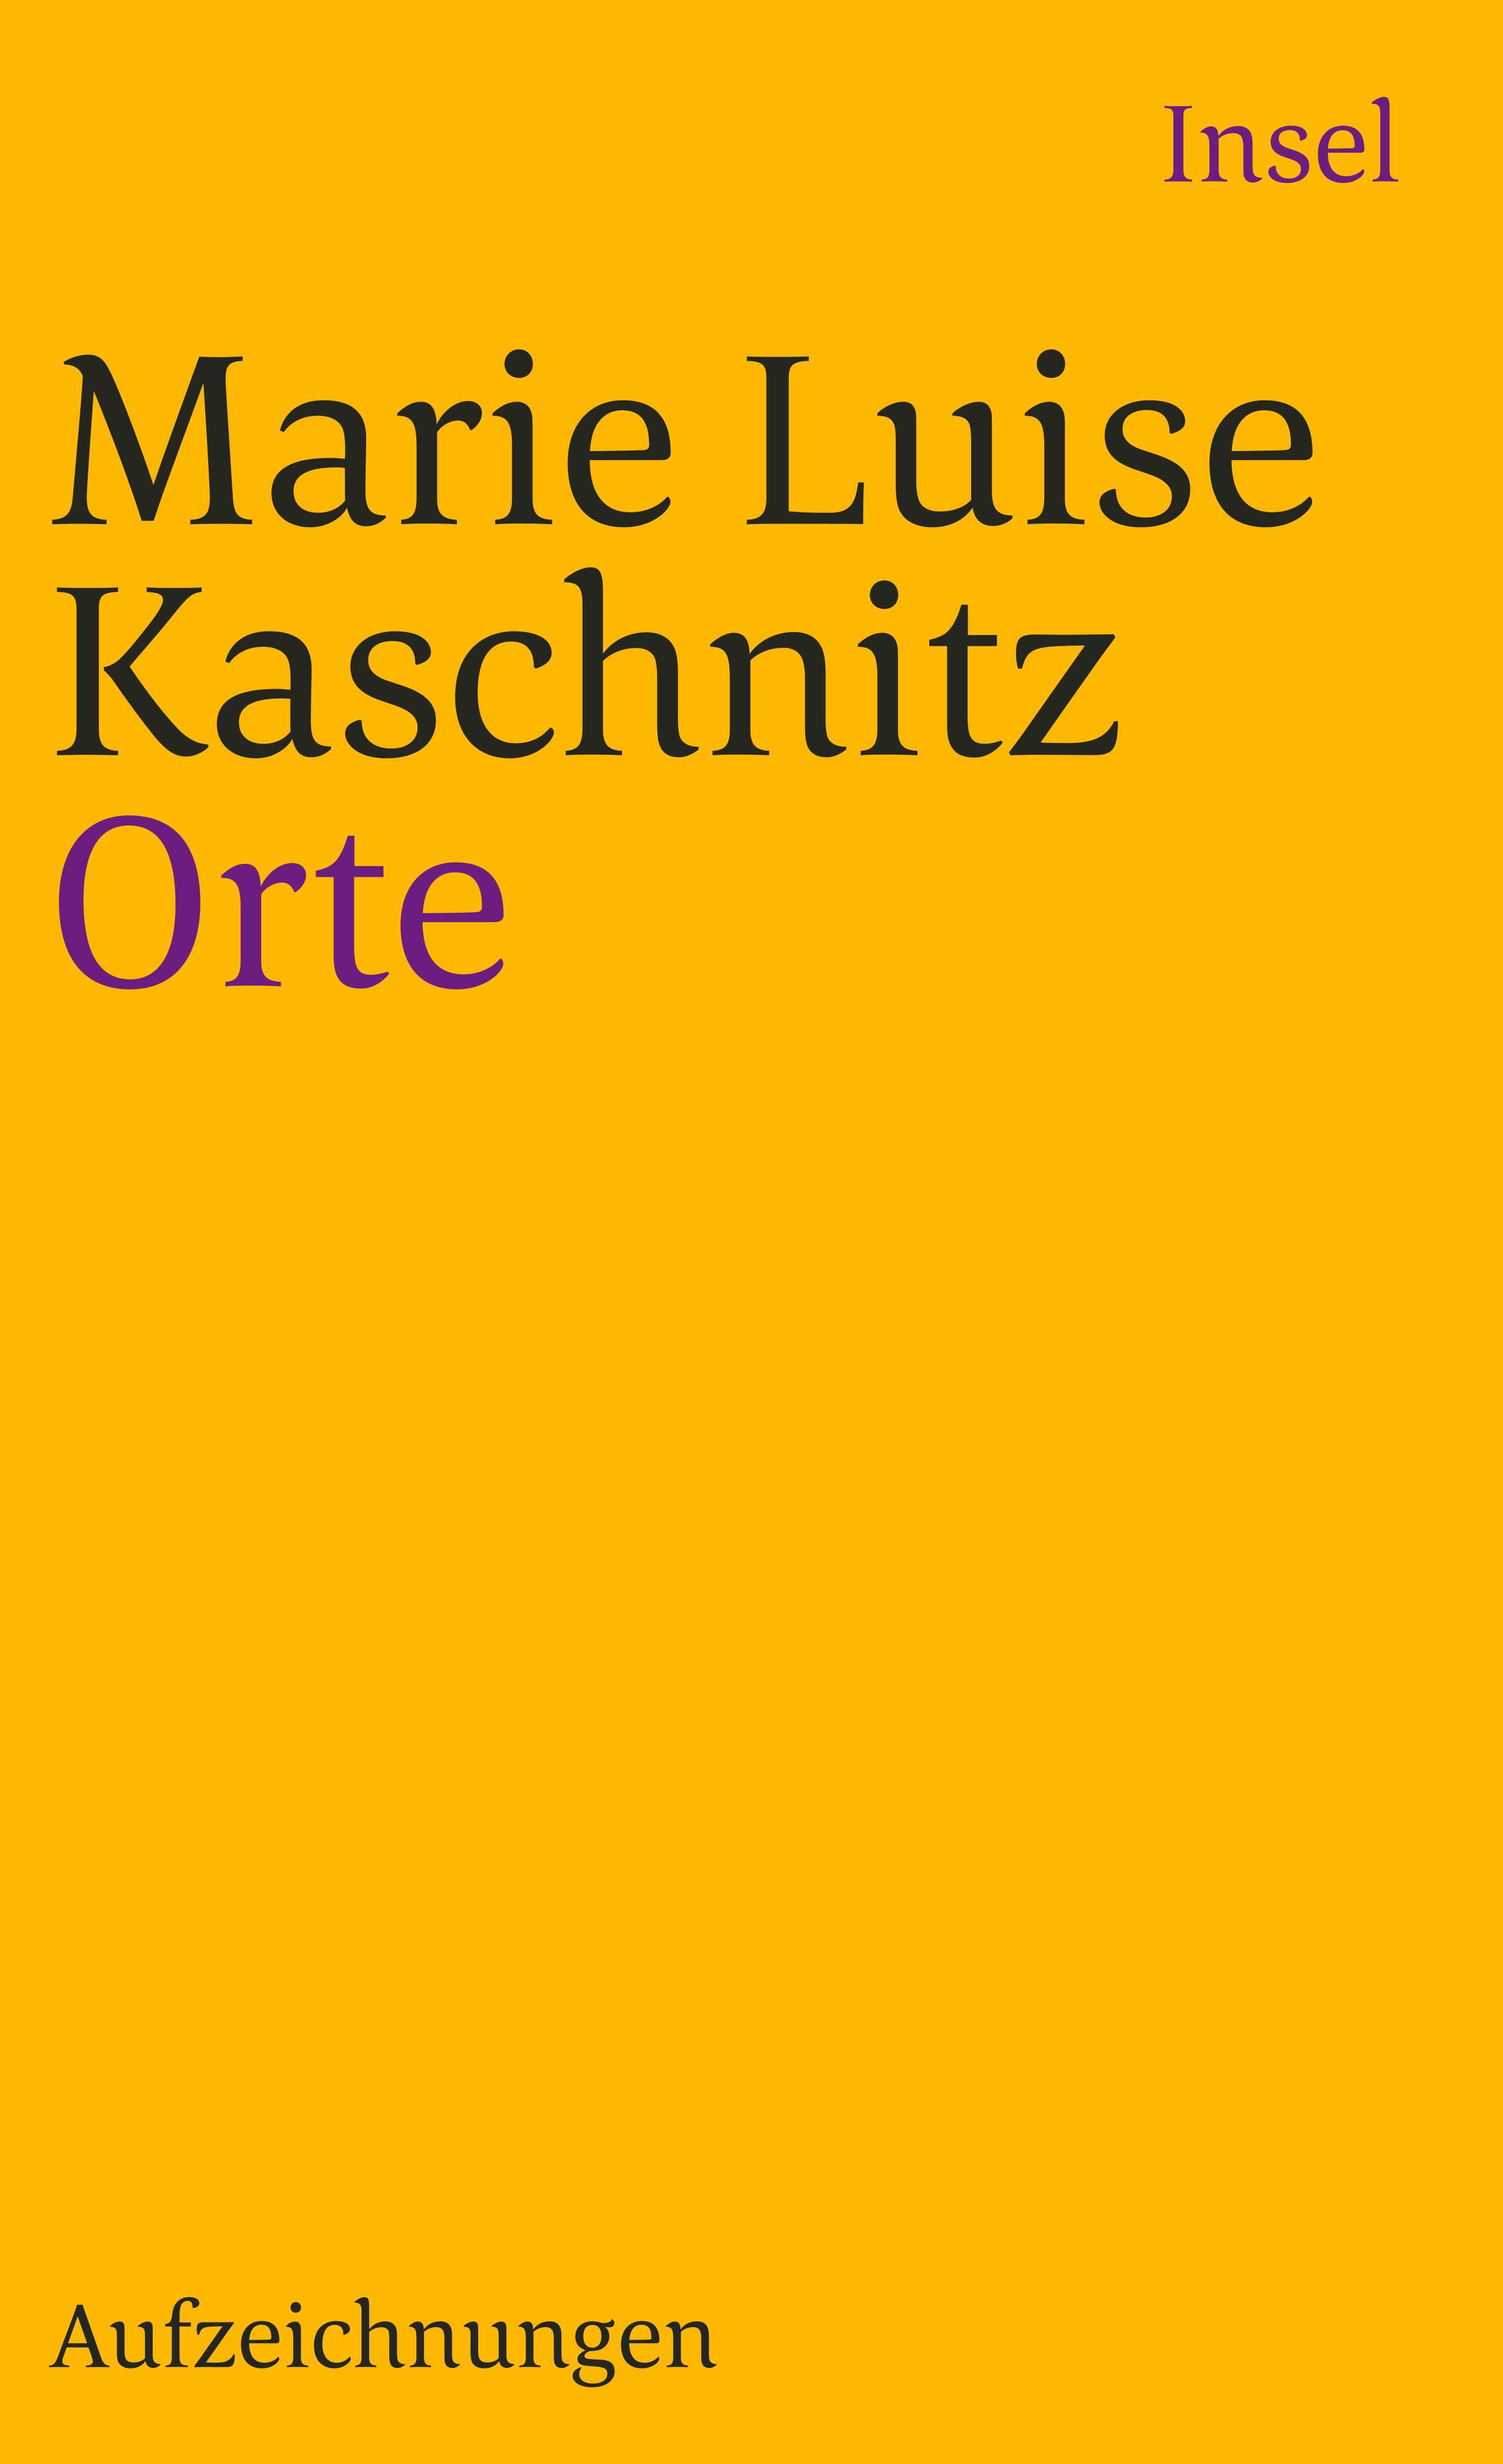 Orte. Buch von Marie Luise Kaschnitz (Insel Verlag)